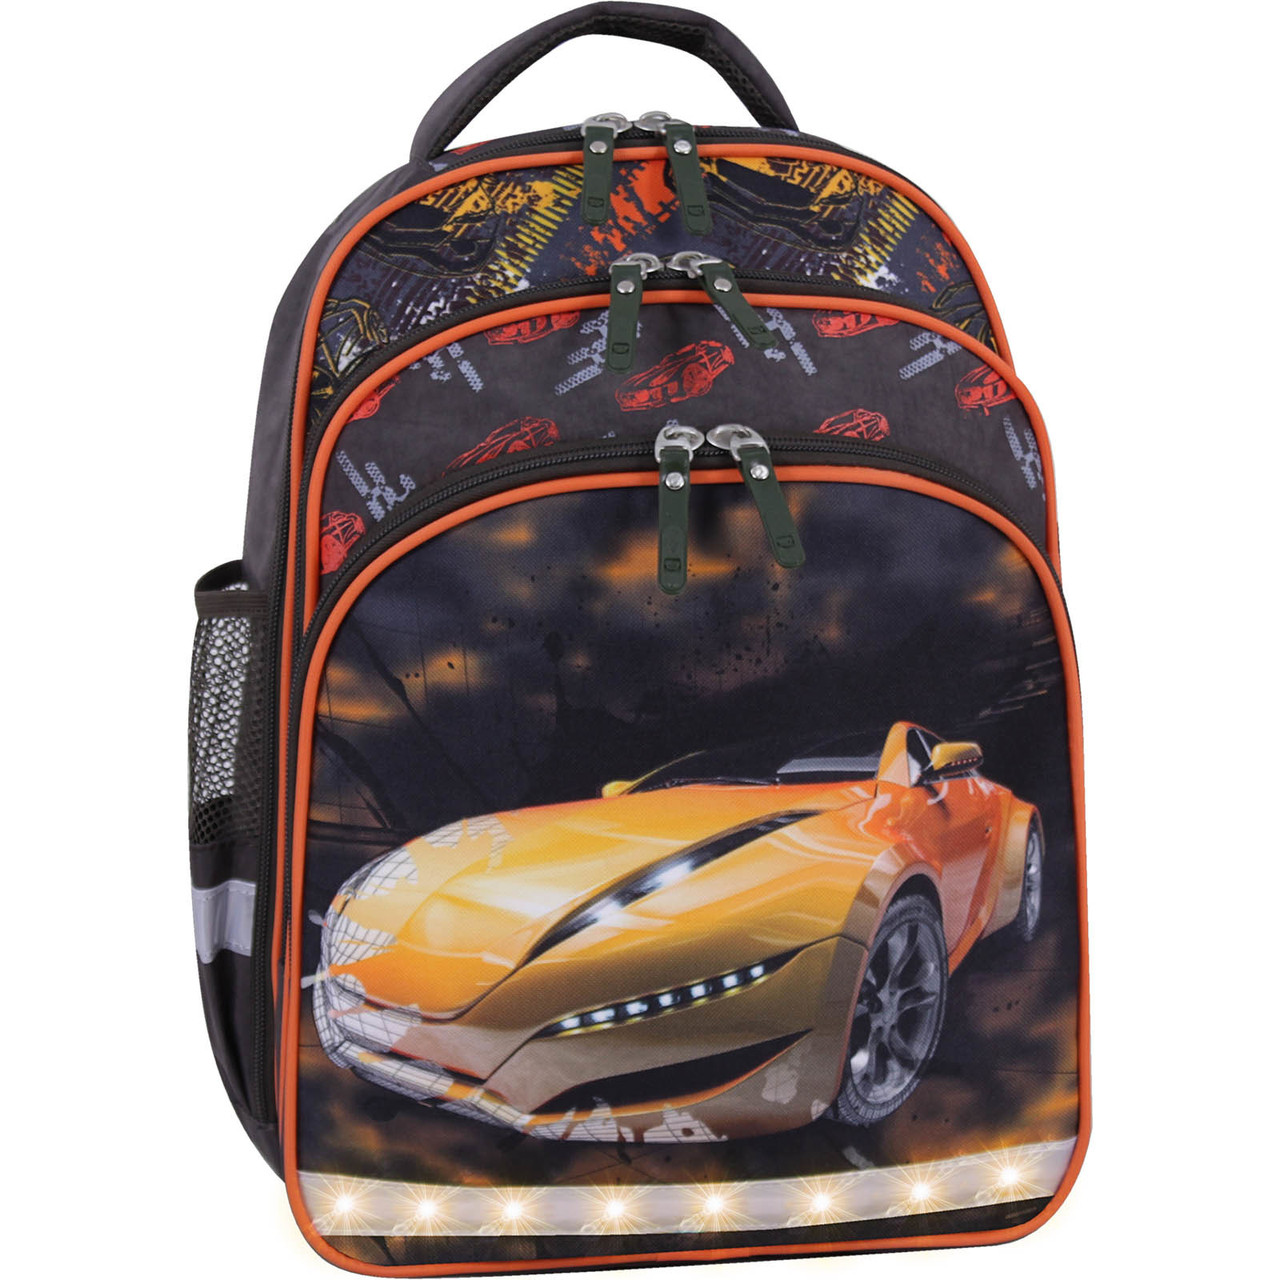 Рюкзак школьный Bagland Mouse с машинкой на 1-4 класс ранец ортопедический портфель для мальчика 0051370, Синий